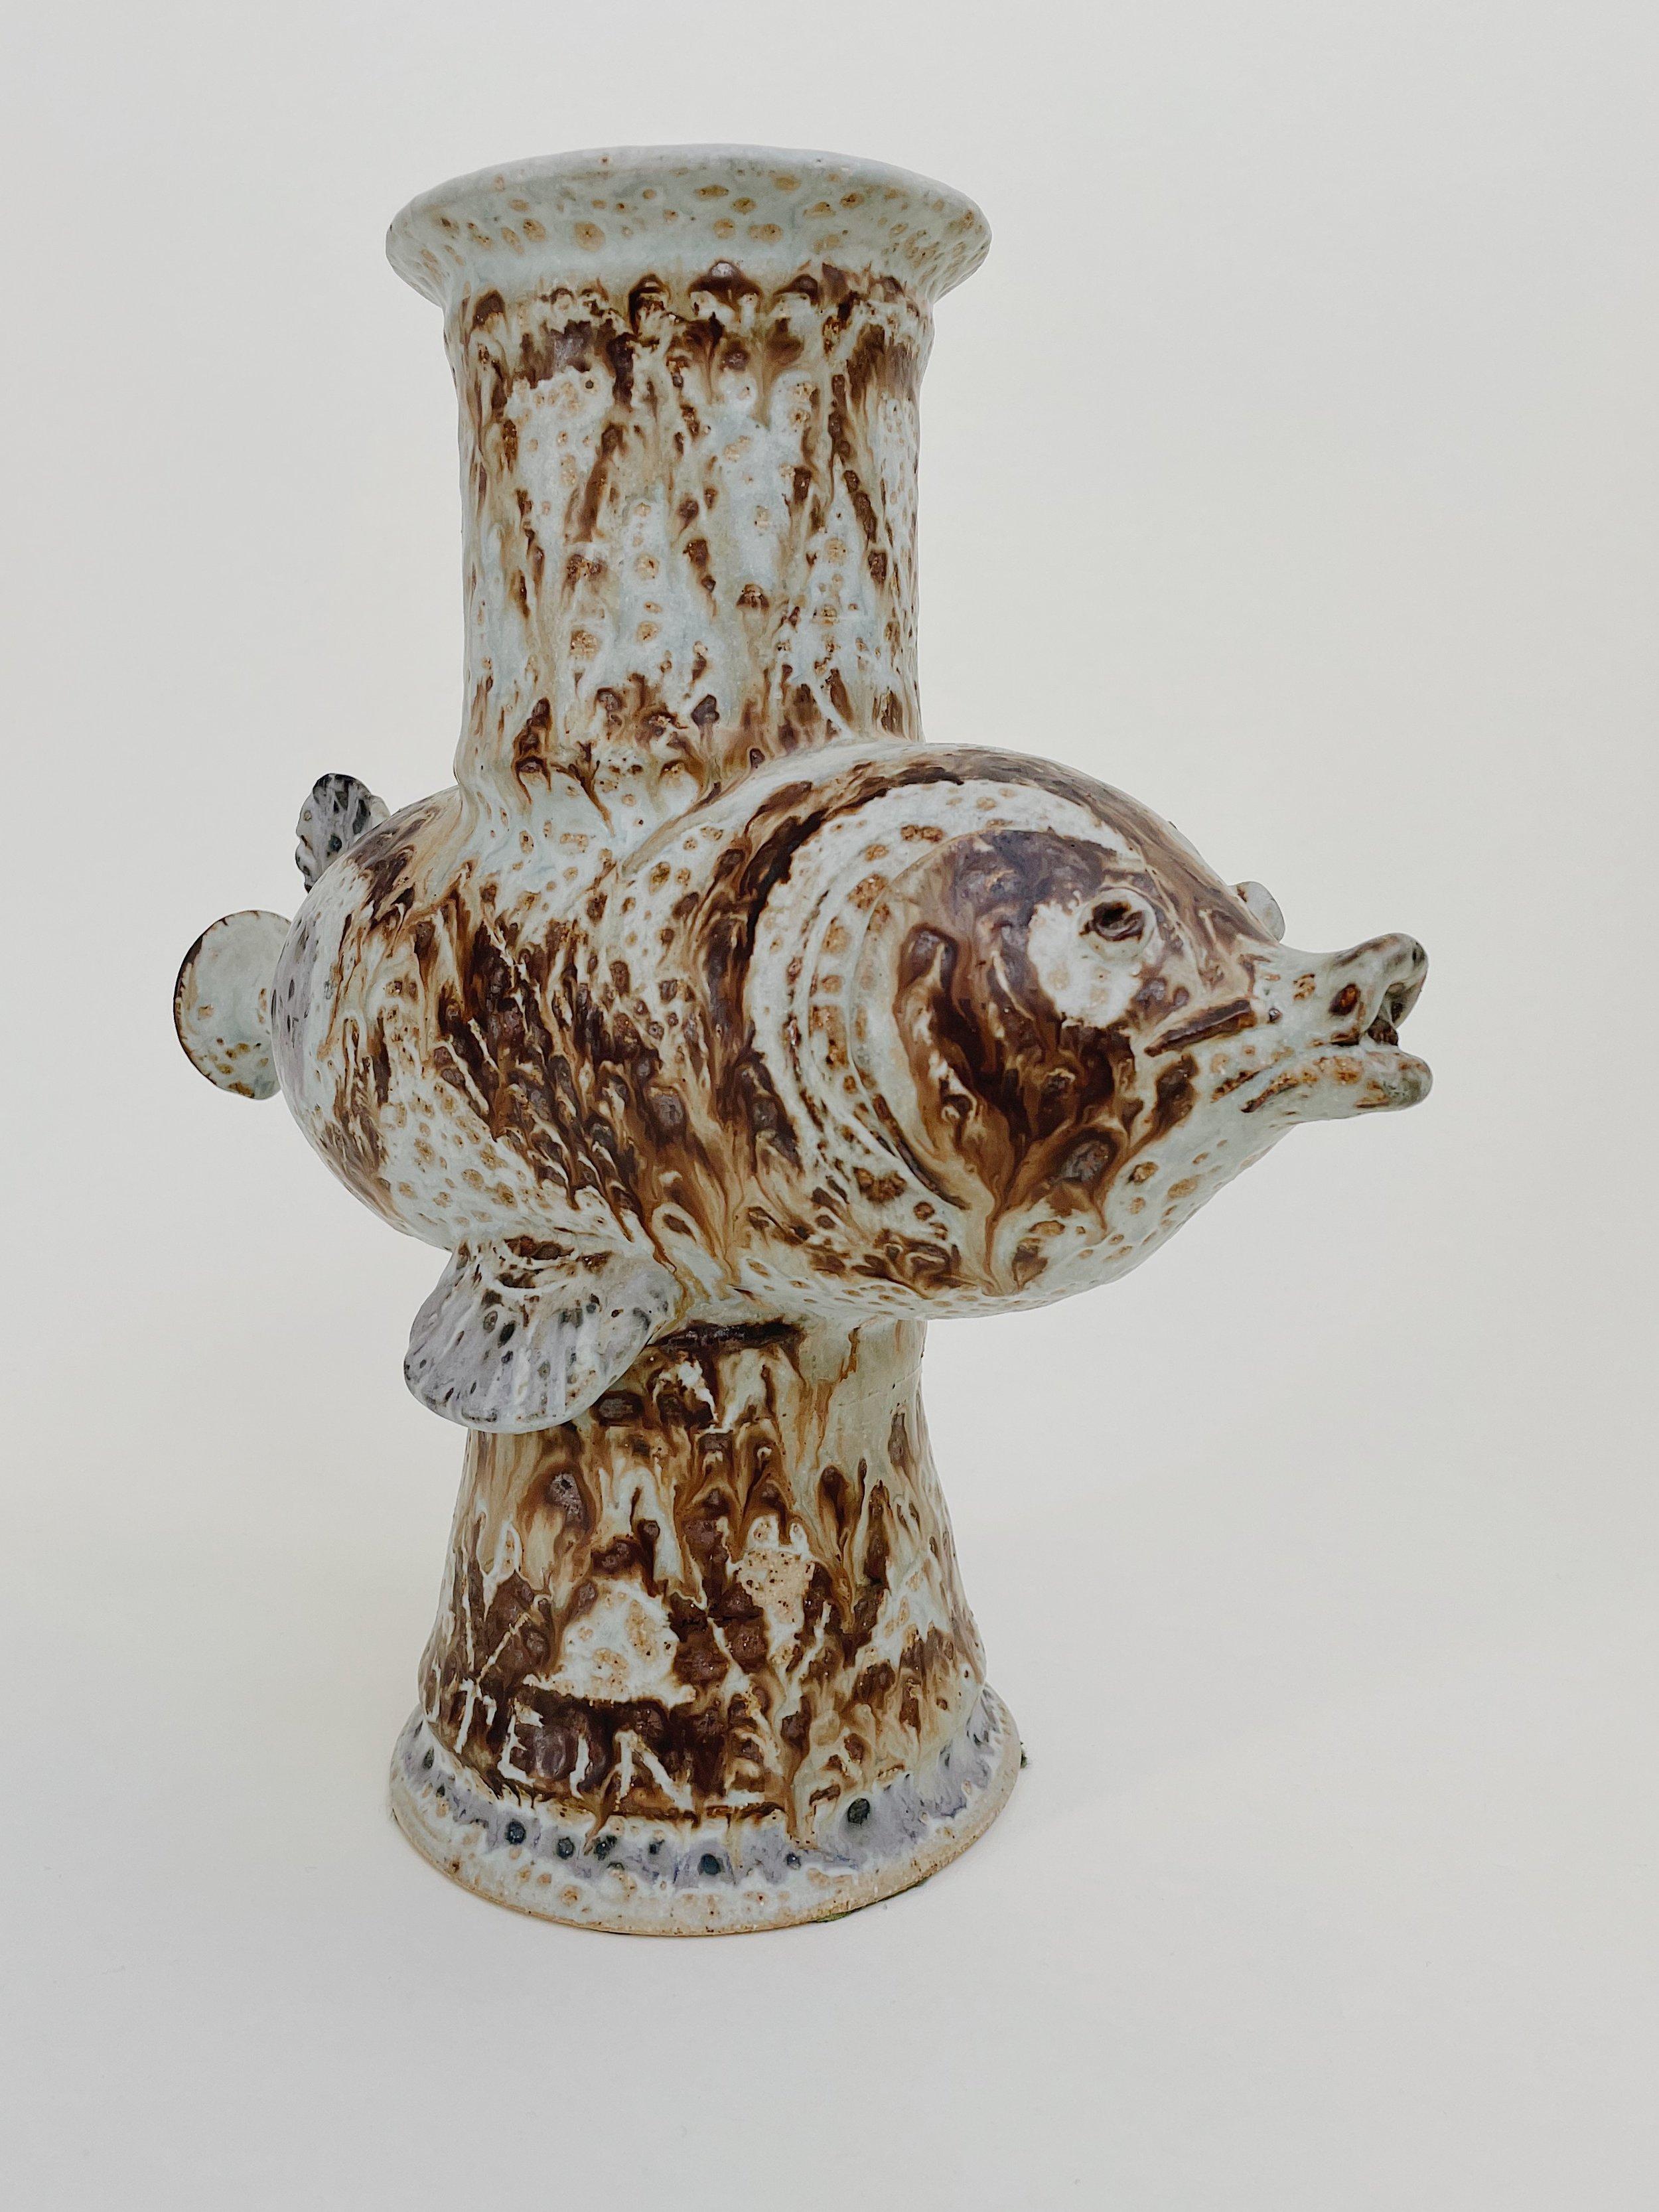 Laszlo Steiner

Einzigartige handgefertigte Fischvase von Laszlo Steiner. Aus knochenfarbenem Ton geformt und glasiert mit Braun-, Karamell-, Lavendel- und Pergamenttönen. Eine atemberaubende Skulptur, signiert und datiert 